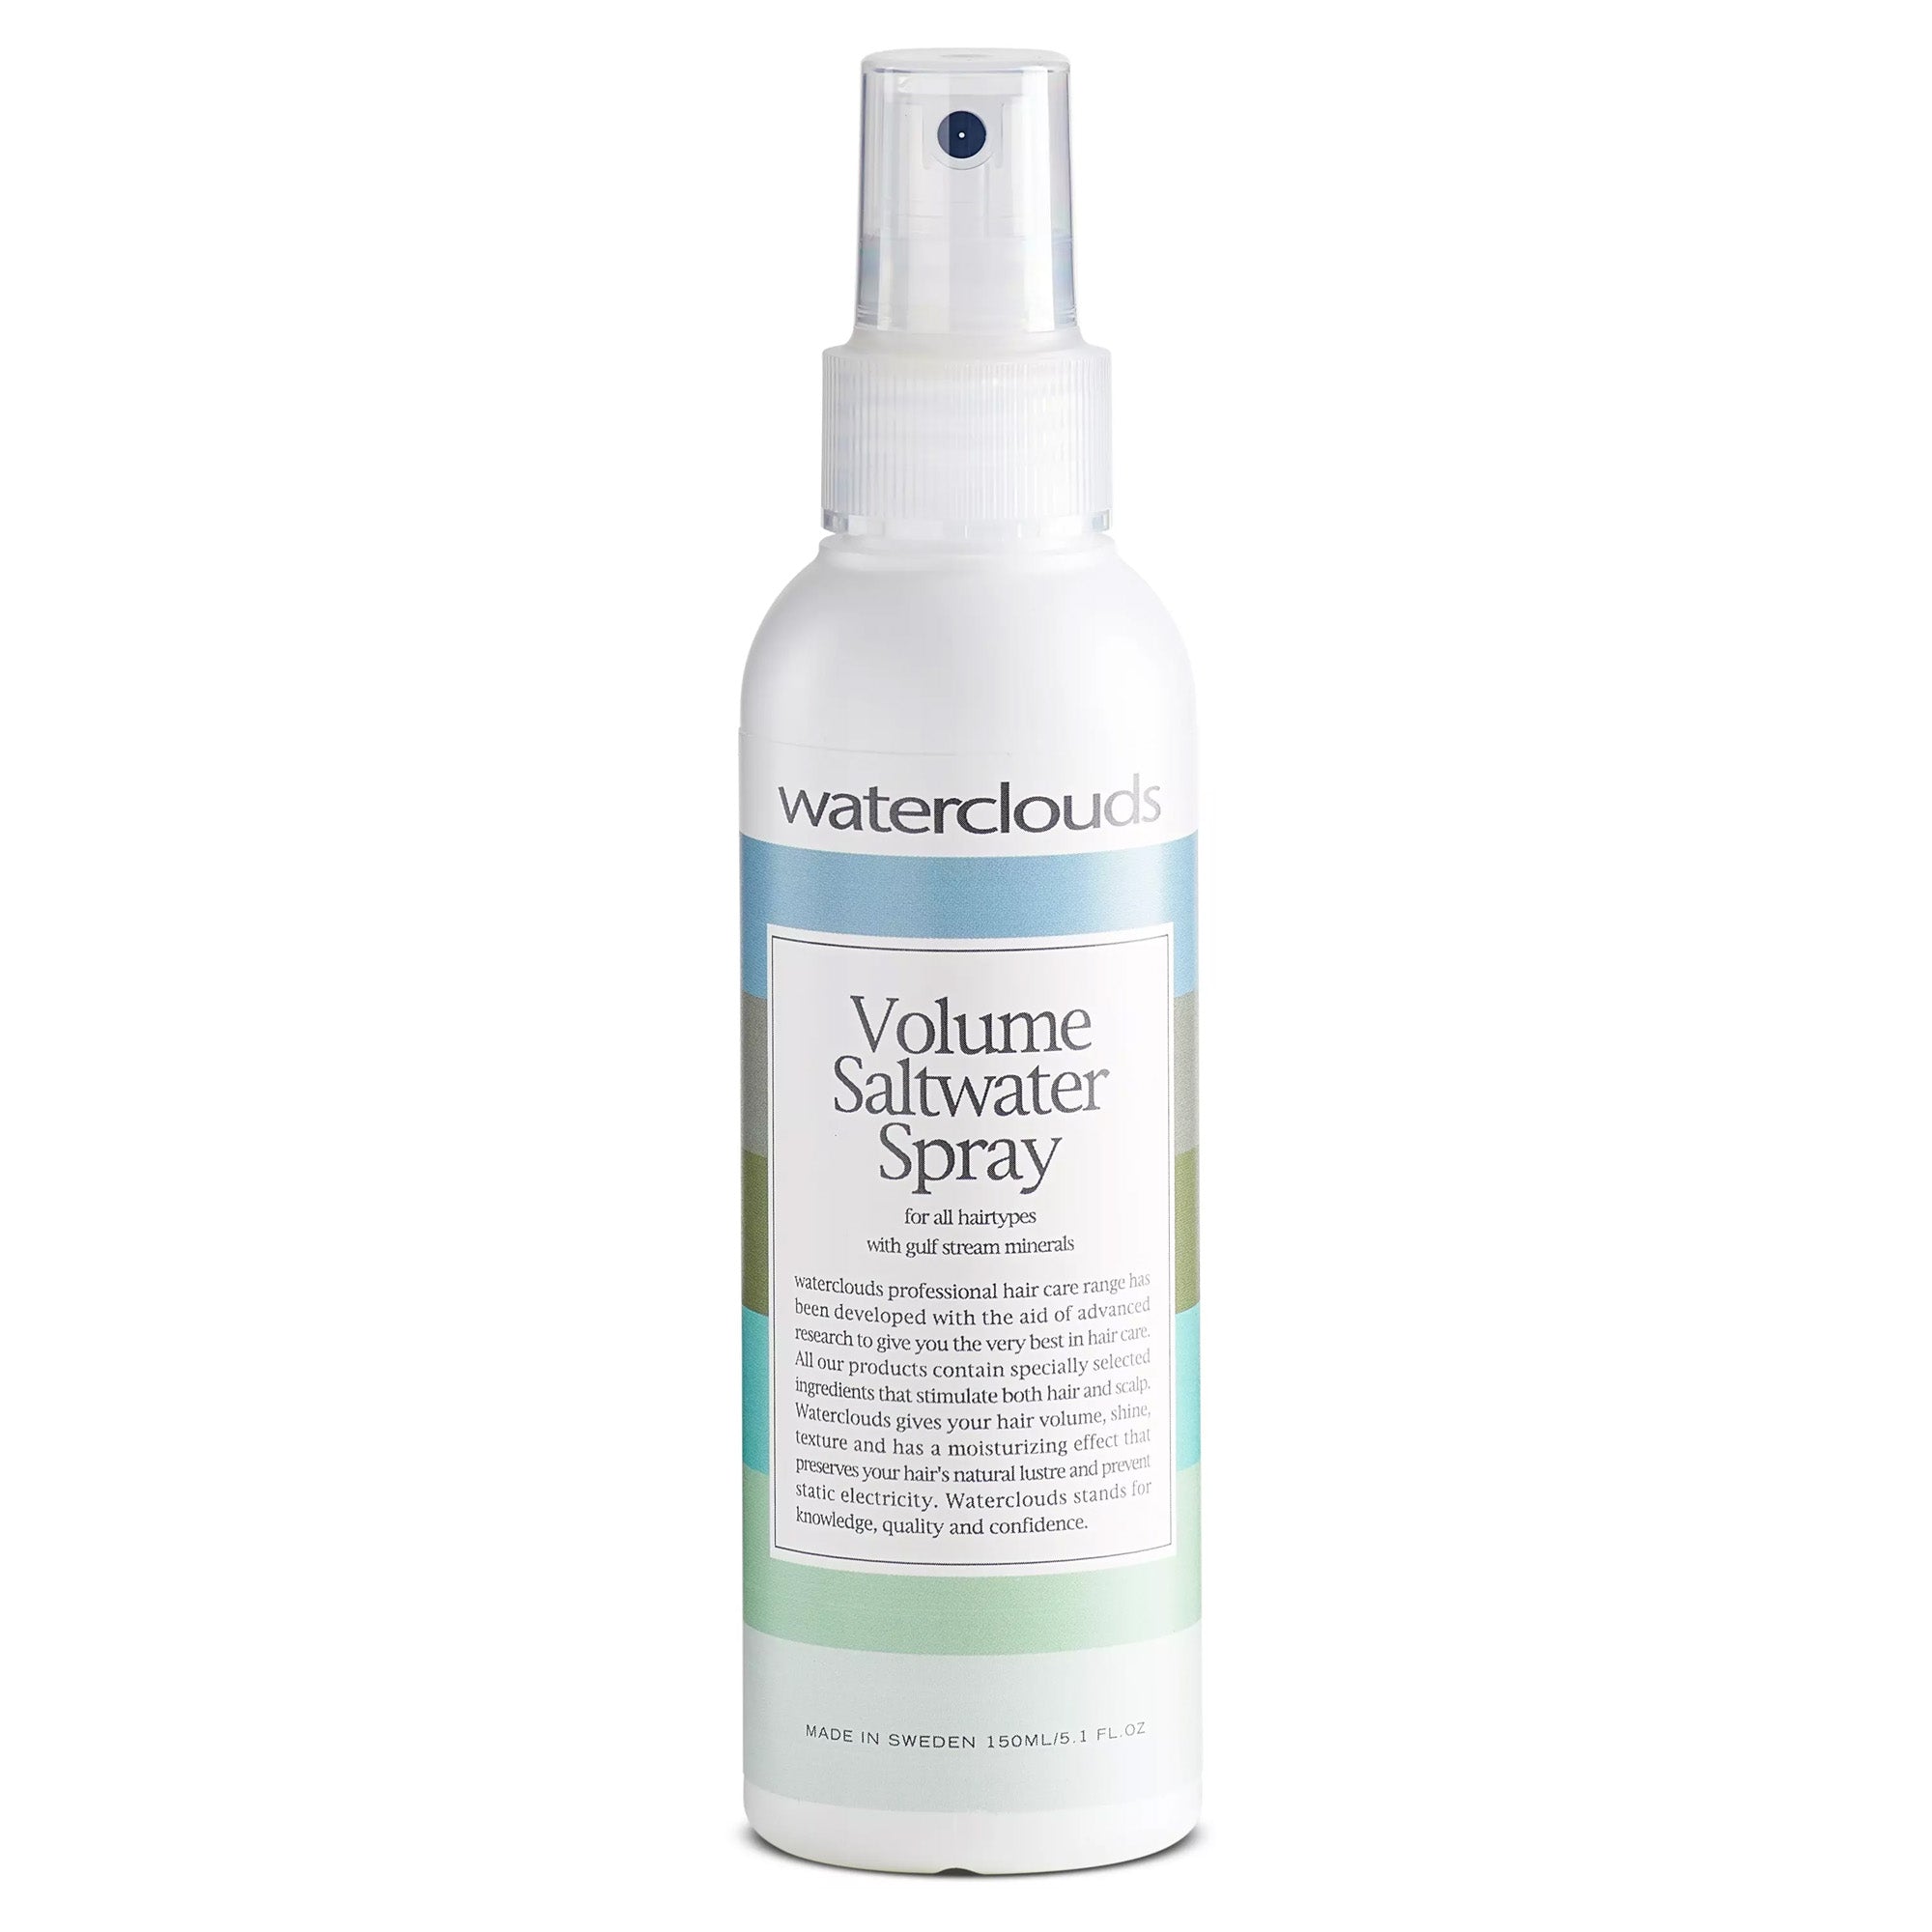 Volume Saltwater spray 150ml